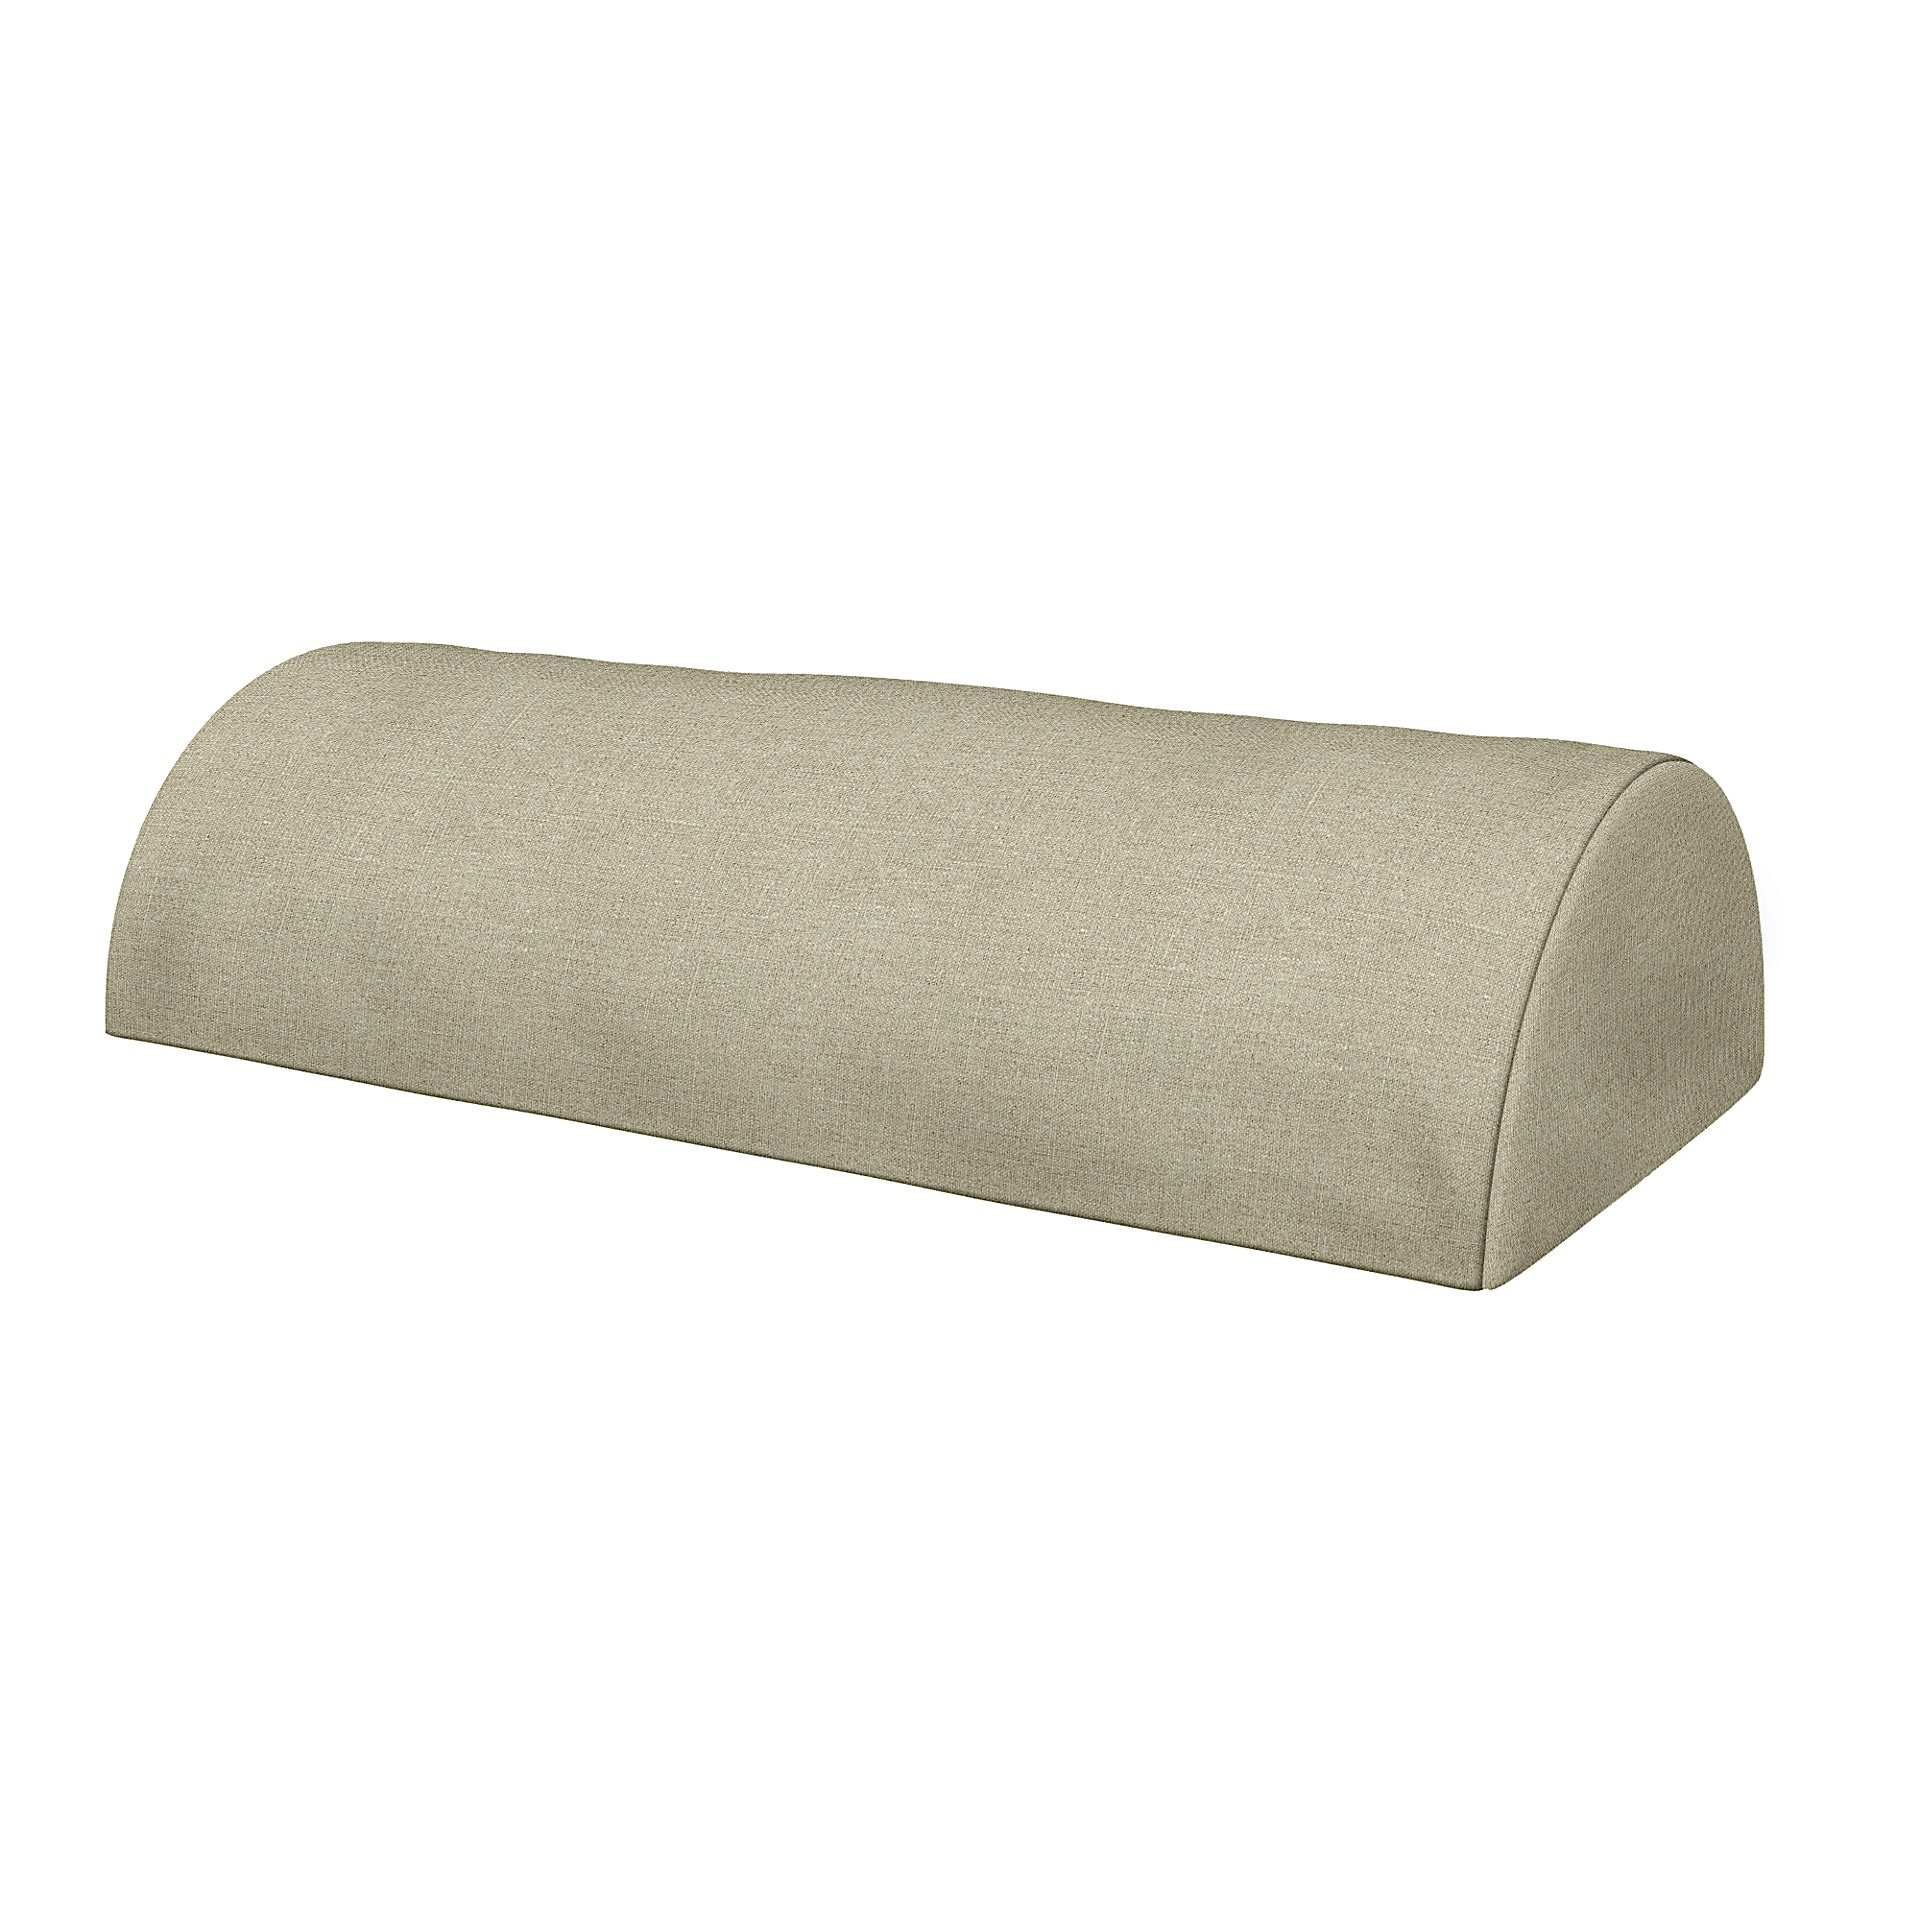 IKEA - Cushion Cover Beddinge Half Moon , Pebble, Linen - Bemz